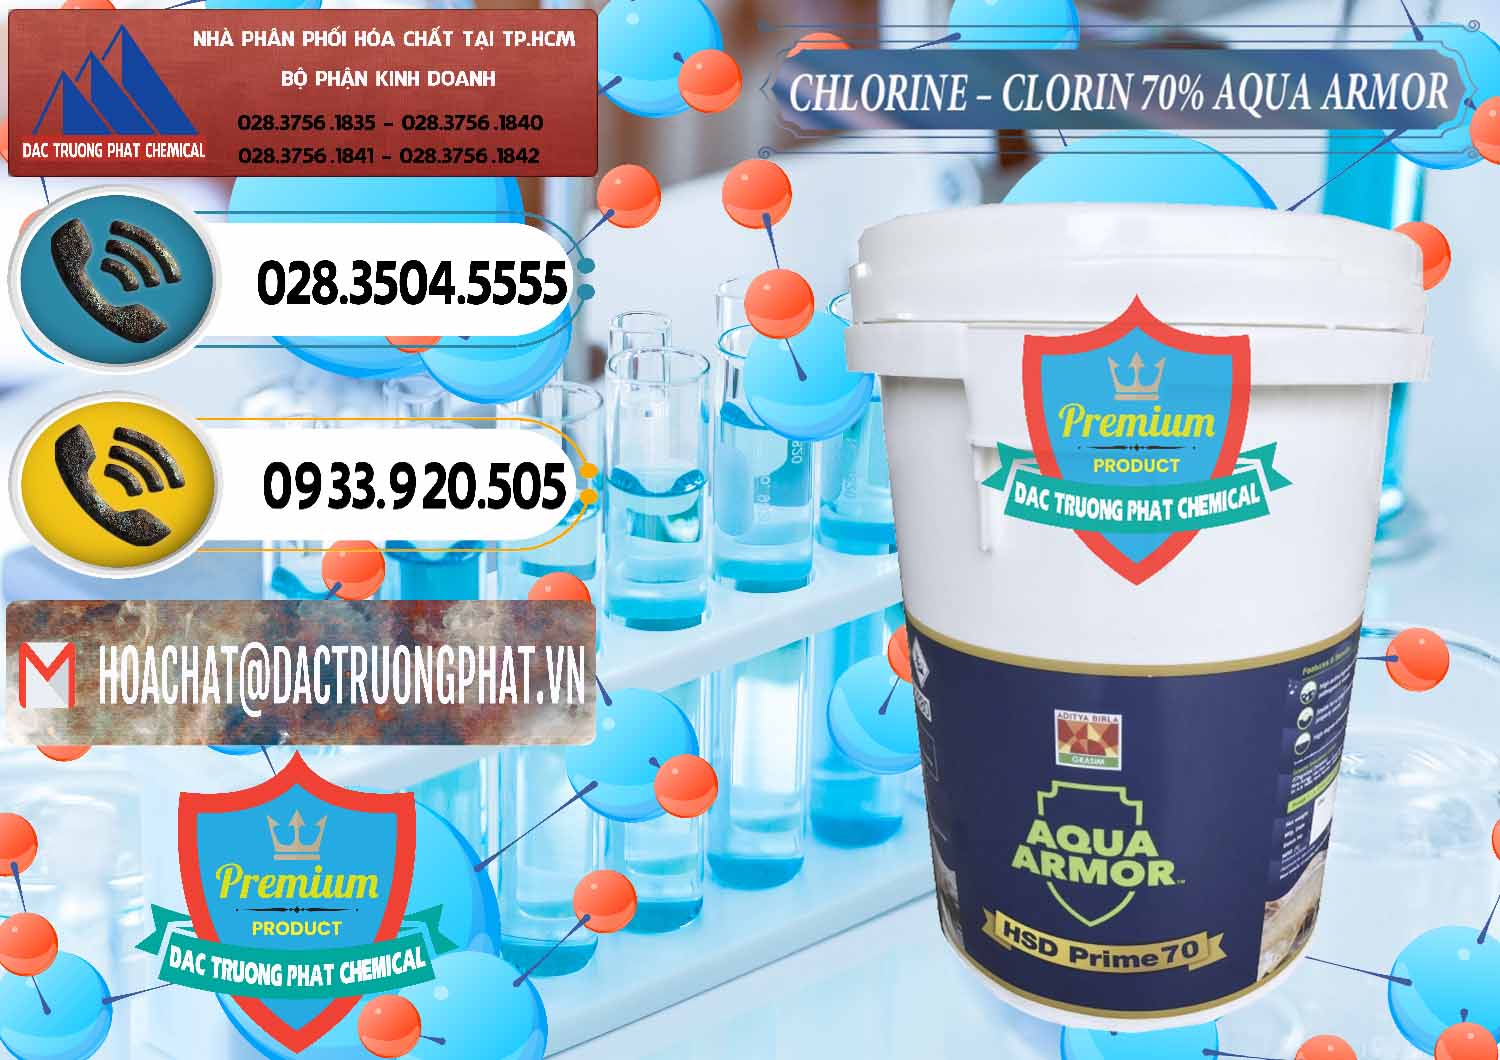 Nơi chuyên cung ứng ( bán ) Chlorine – Clorin 70% Aqua Armor Aditya Birla Grasim Ấn Độ India - 0241 - Chuyên kinh doanh - cung cấp hóa chất tại TP.HCM - hoachatdetnhuom.vn